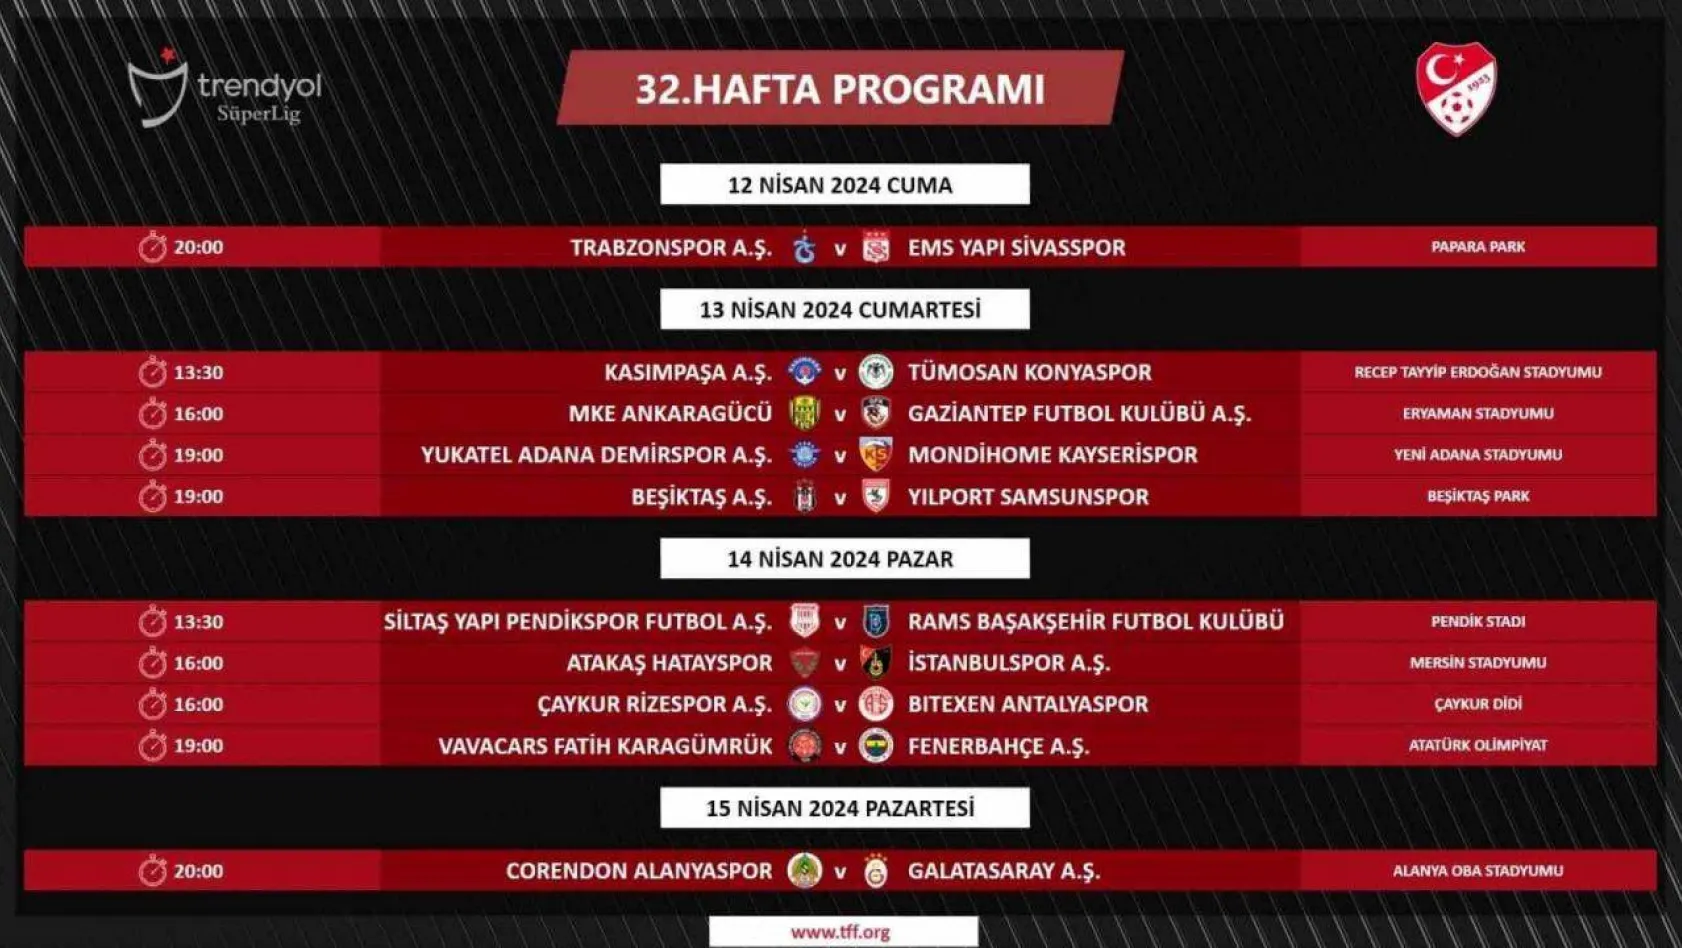 Trendyol Süper Lig'de 32. haftanın programı açıklandı